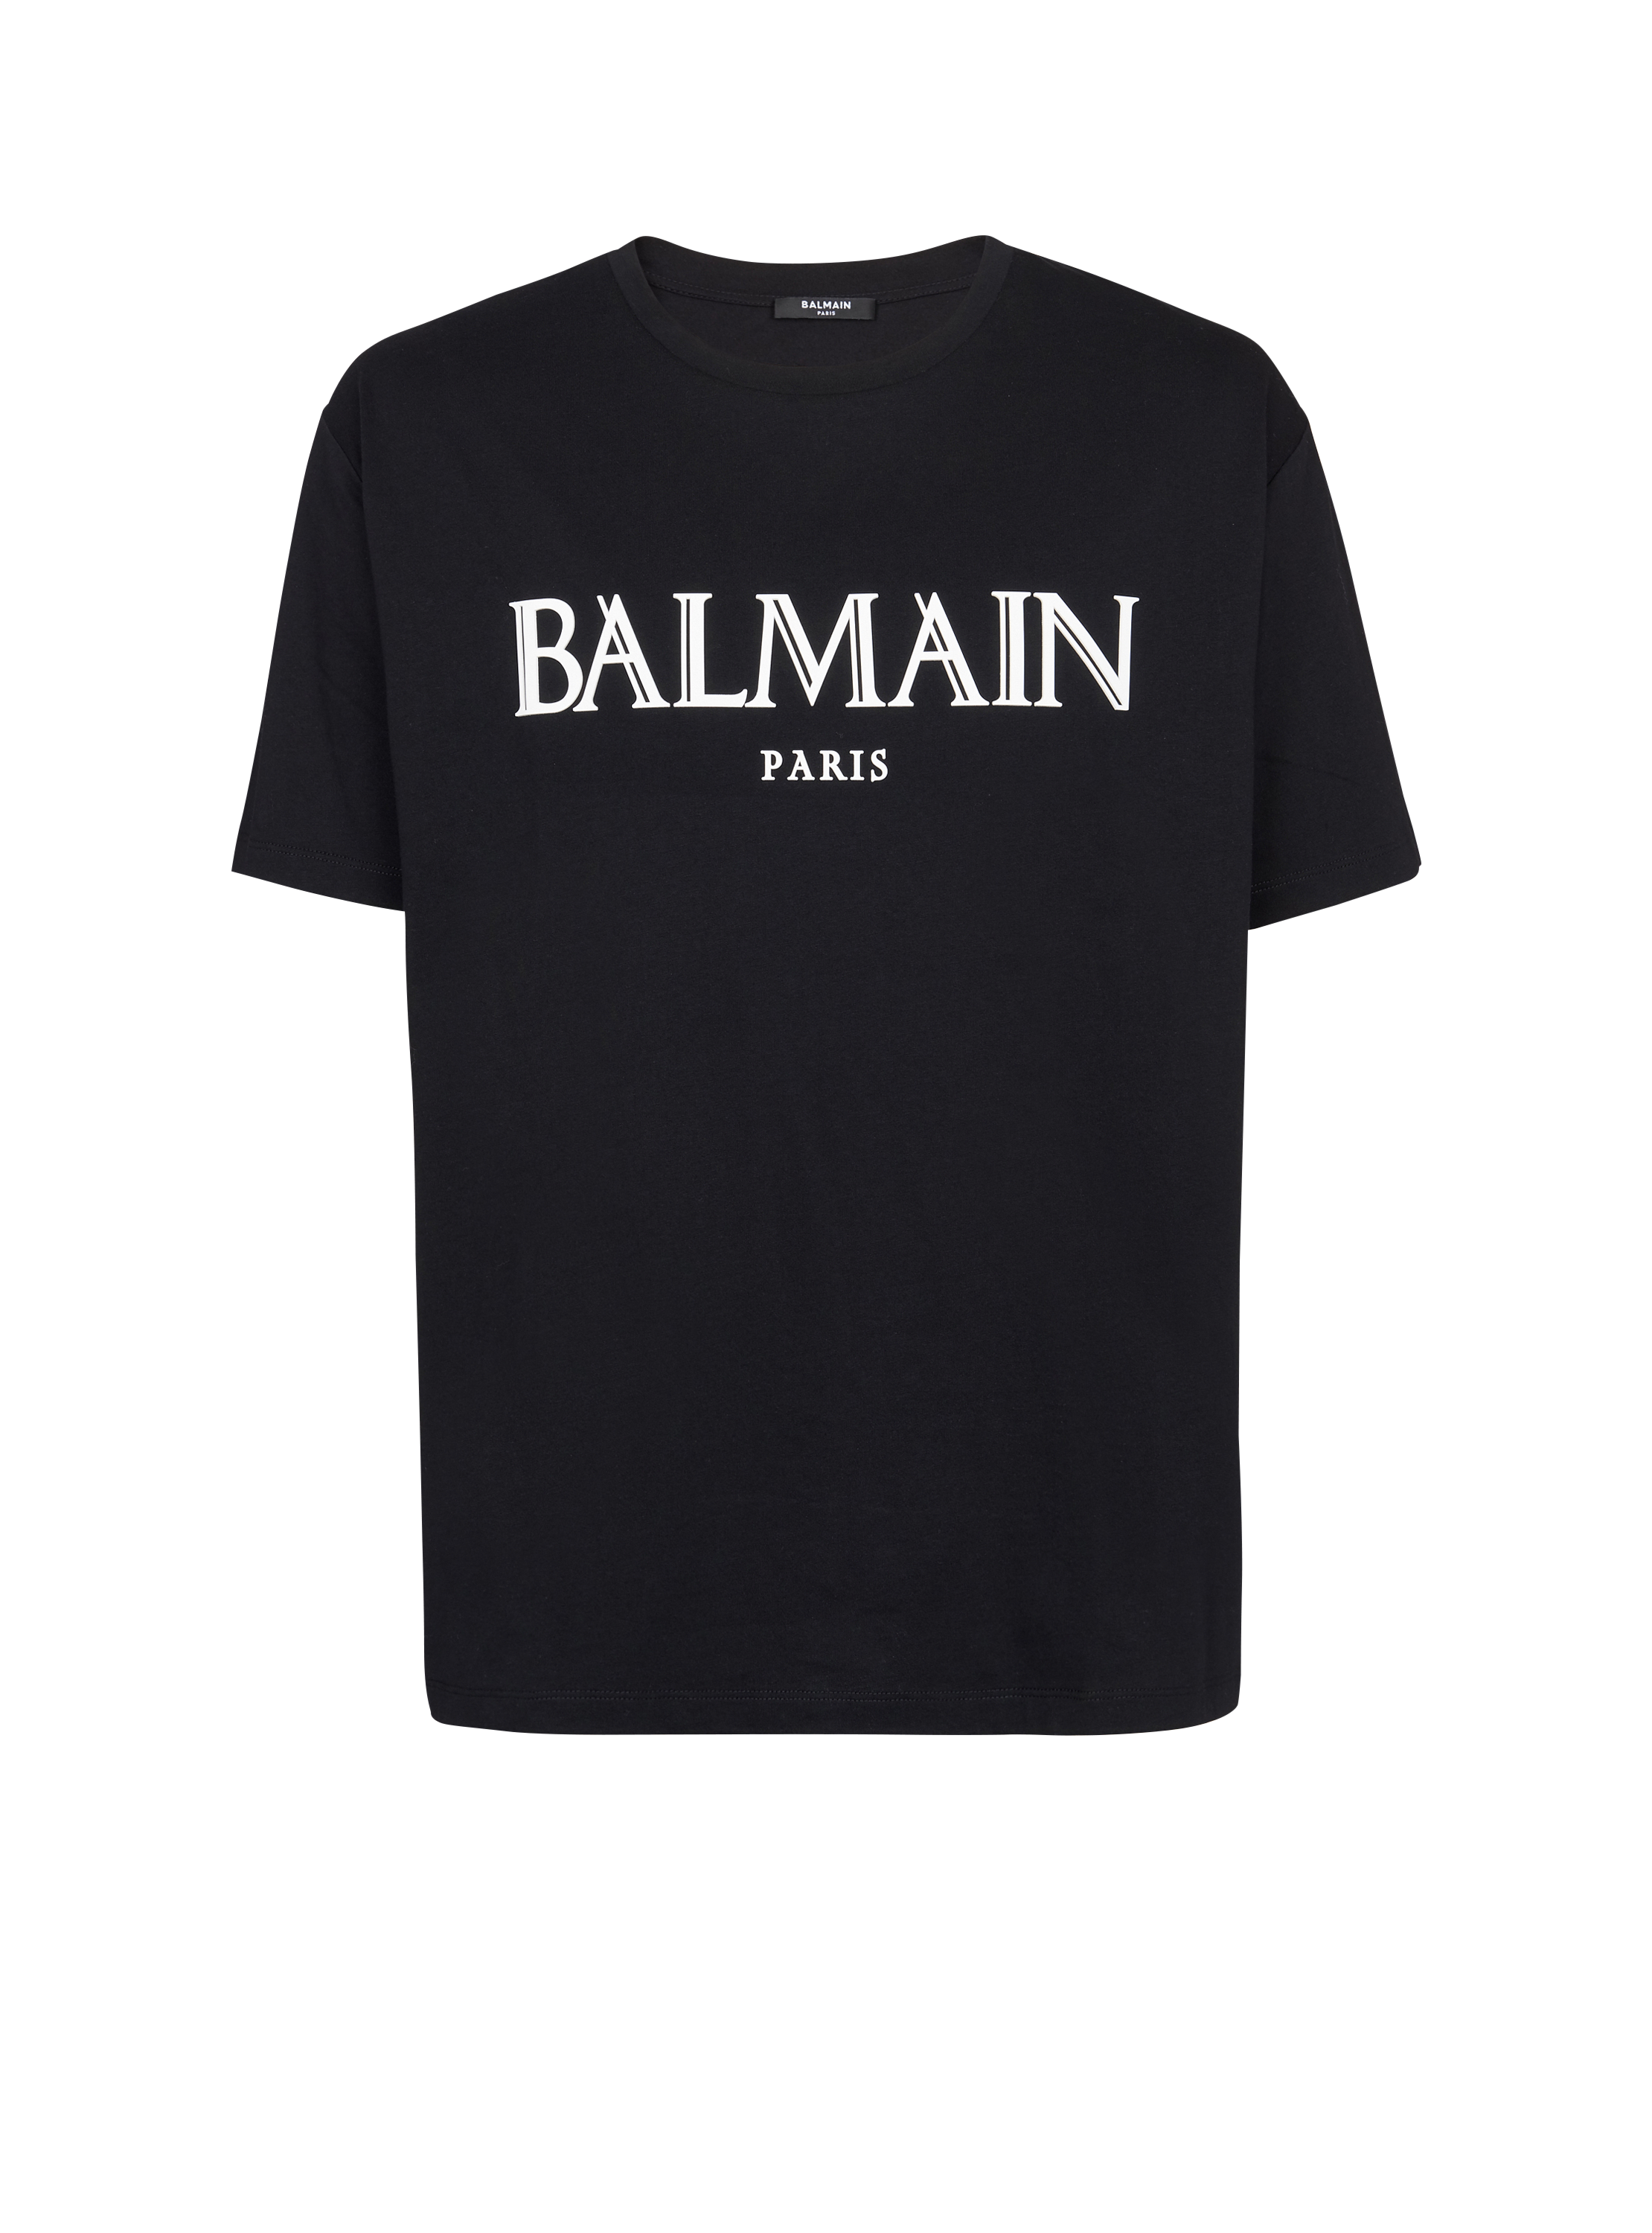 Oversize-T-Shirt mit römischem Balmain-Logo aus Kautschuk, schwarz, hi-res